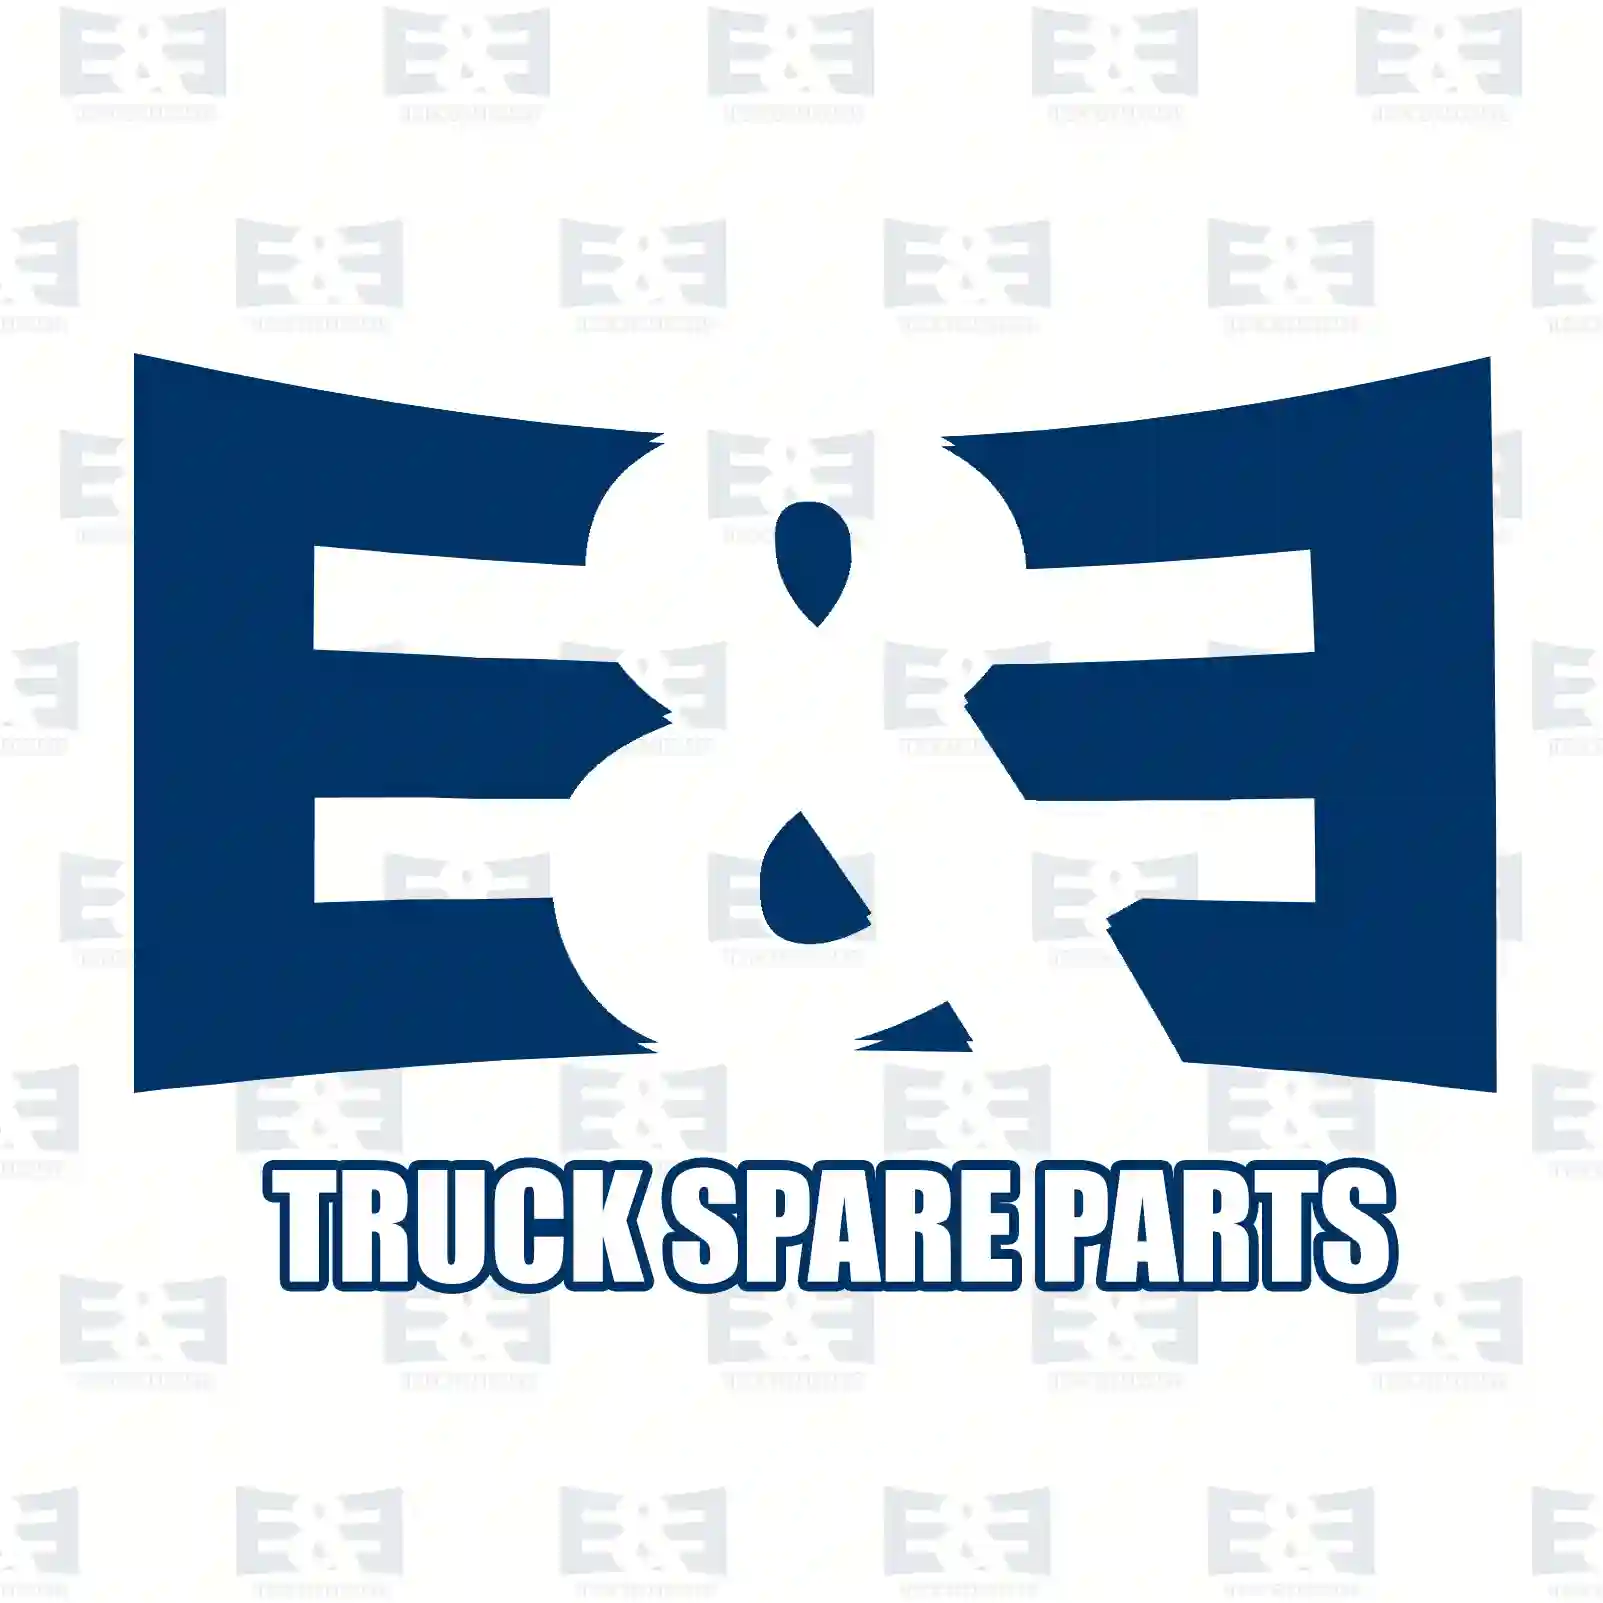 Bushing, 2E2276614, 8142168, ZG40917-0008, ||  2E2276614 E&E Truck Spare Parts | Truck Spare Parts, Auotomotive Spare Parts Bushing, 2E2276614, 8142168, ZG40917-0008, ||  2E2276614 E&E Truck Spare Parts | Truck Spare Parts, Auotomotive Spare Parts